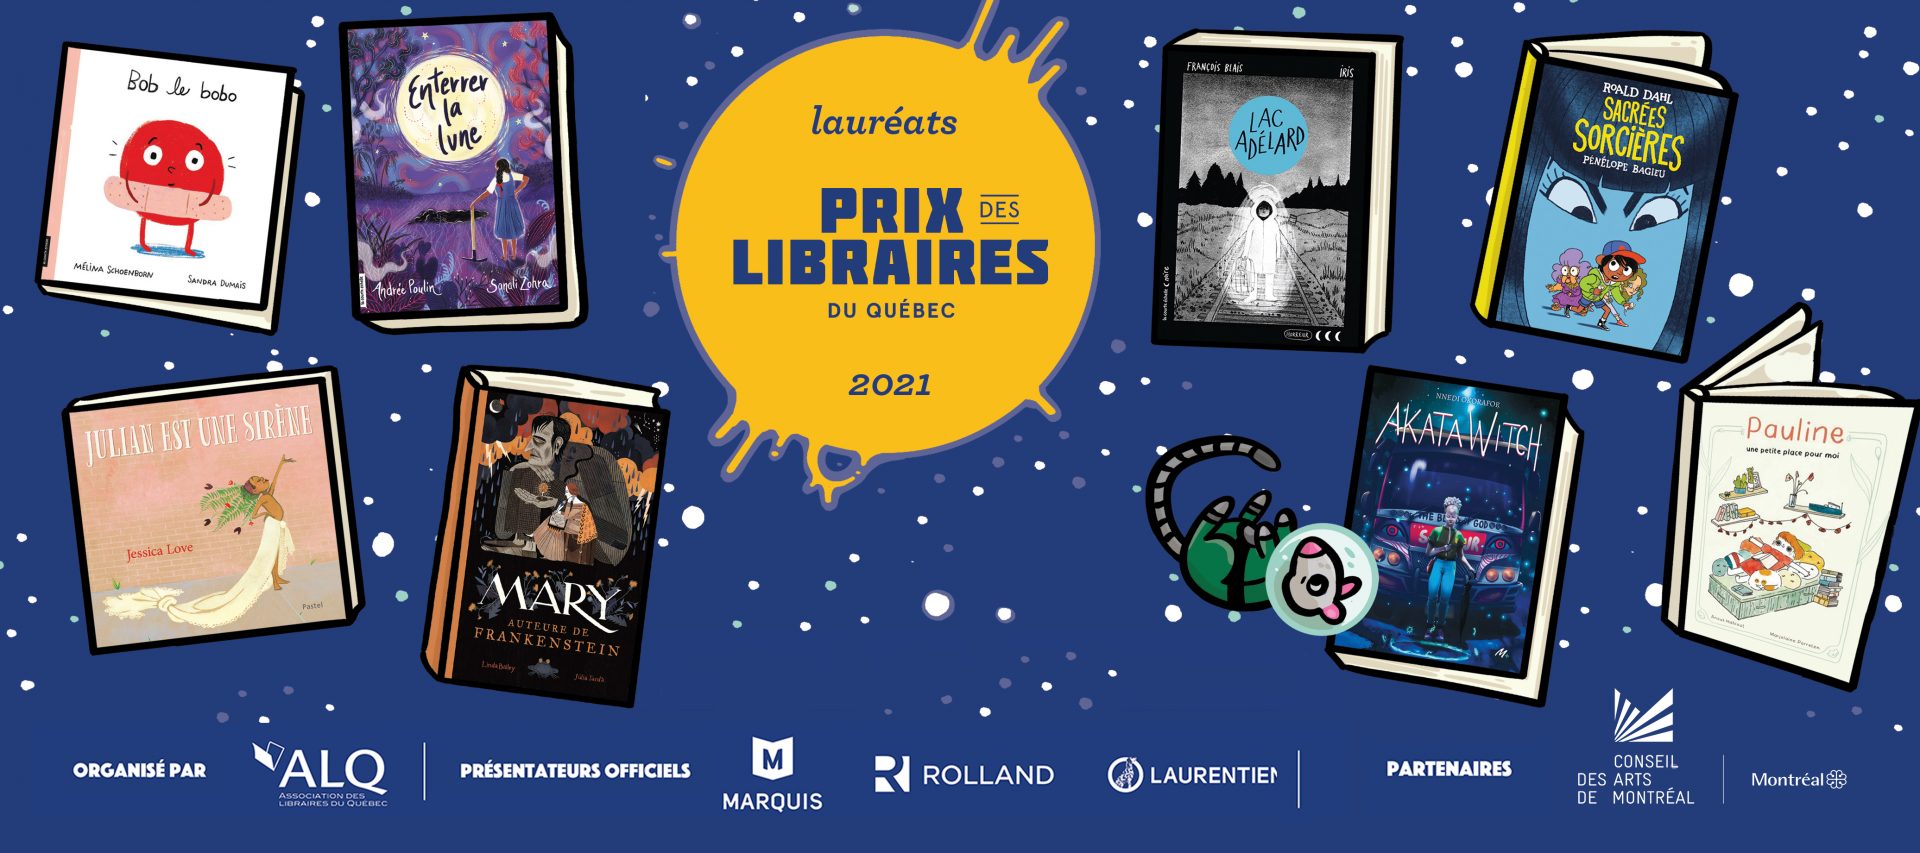 Lauréat-e-s 2021 : Prix des libraires du Québec catégorie Jeunesse